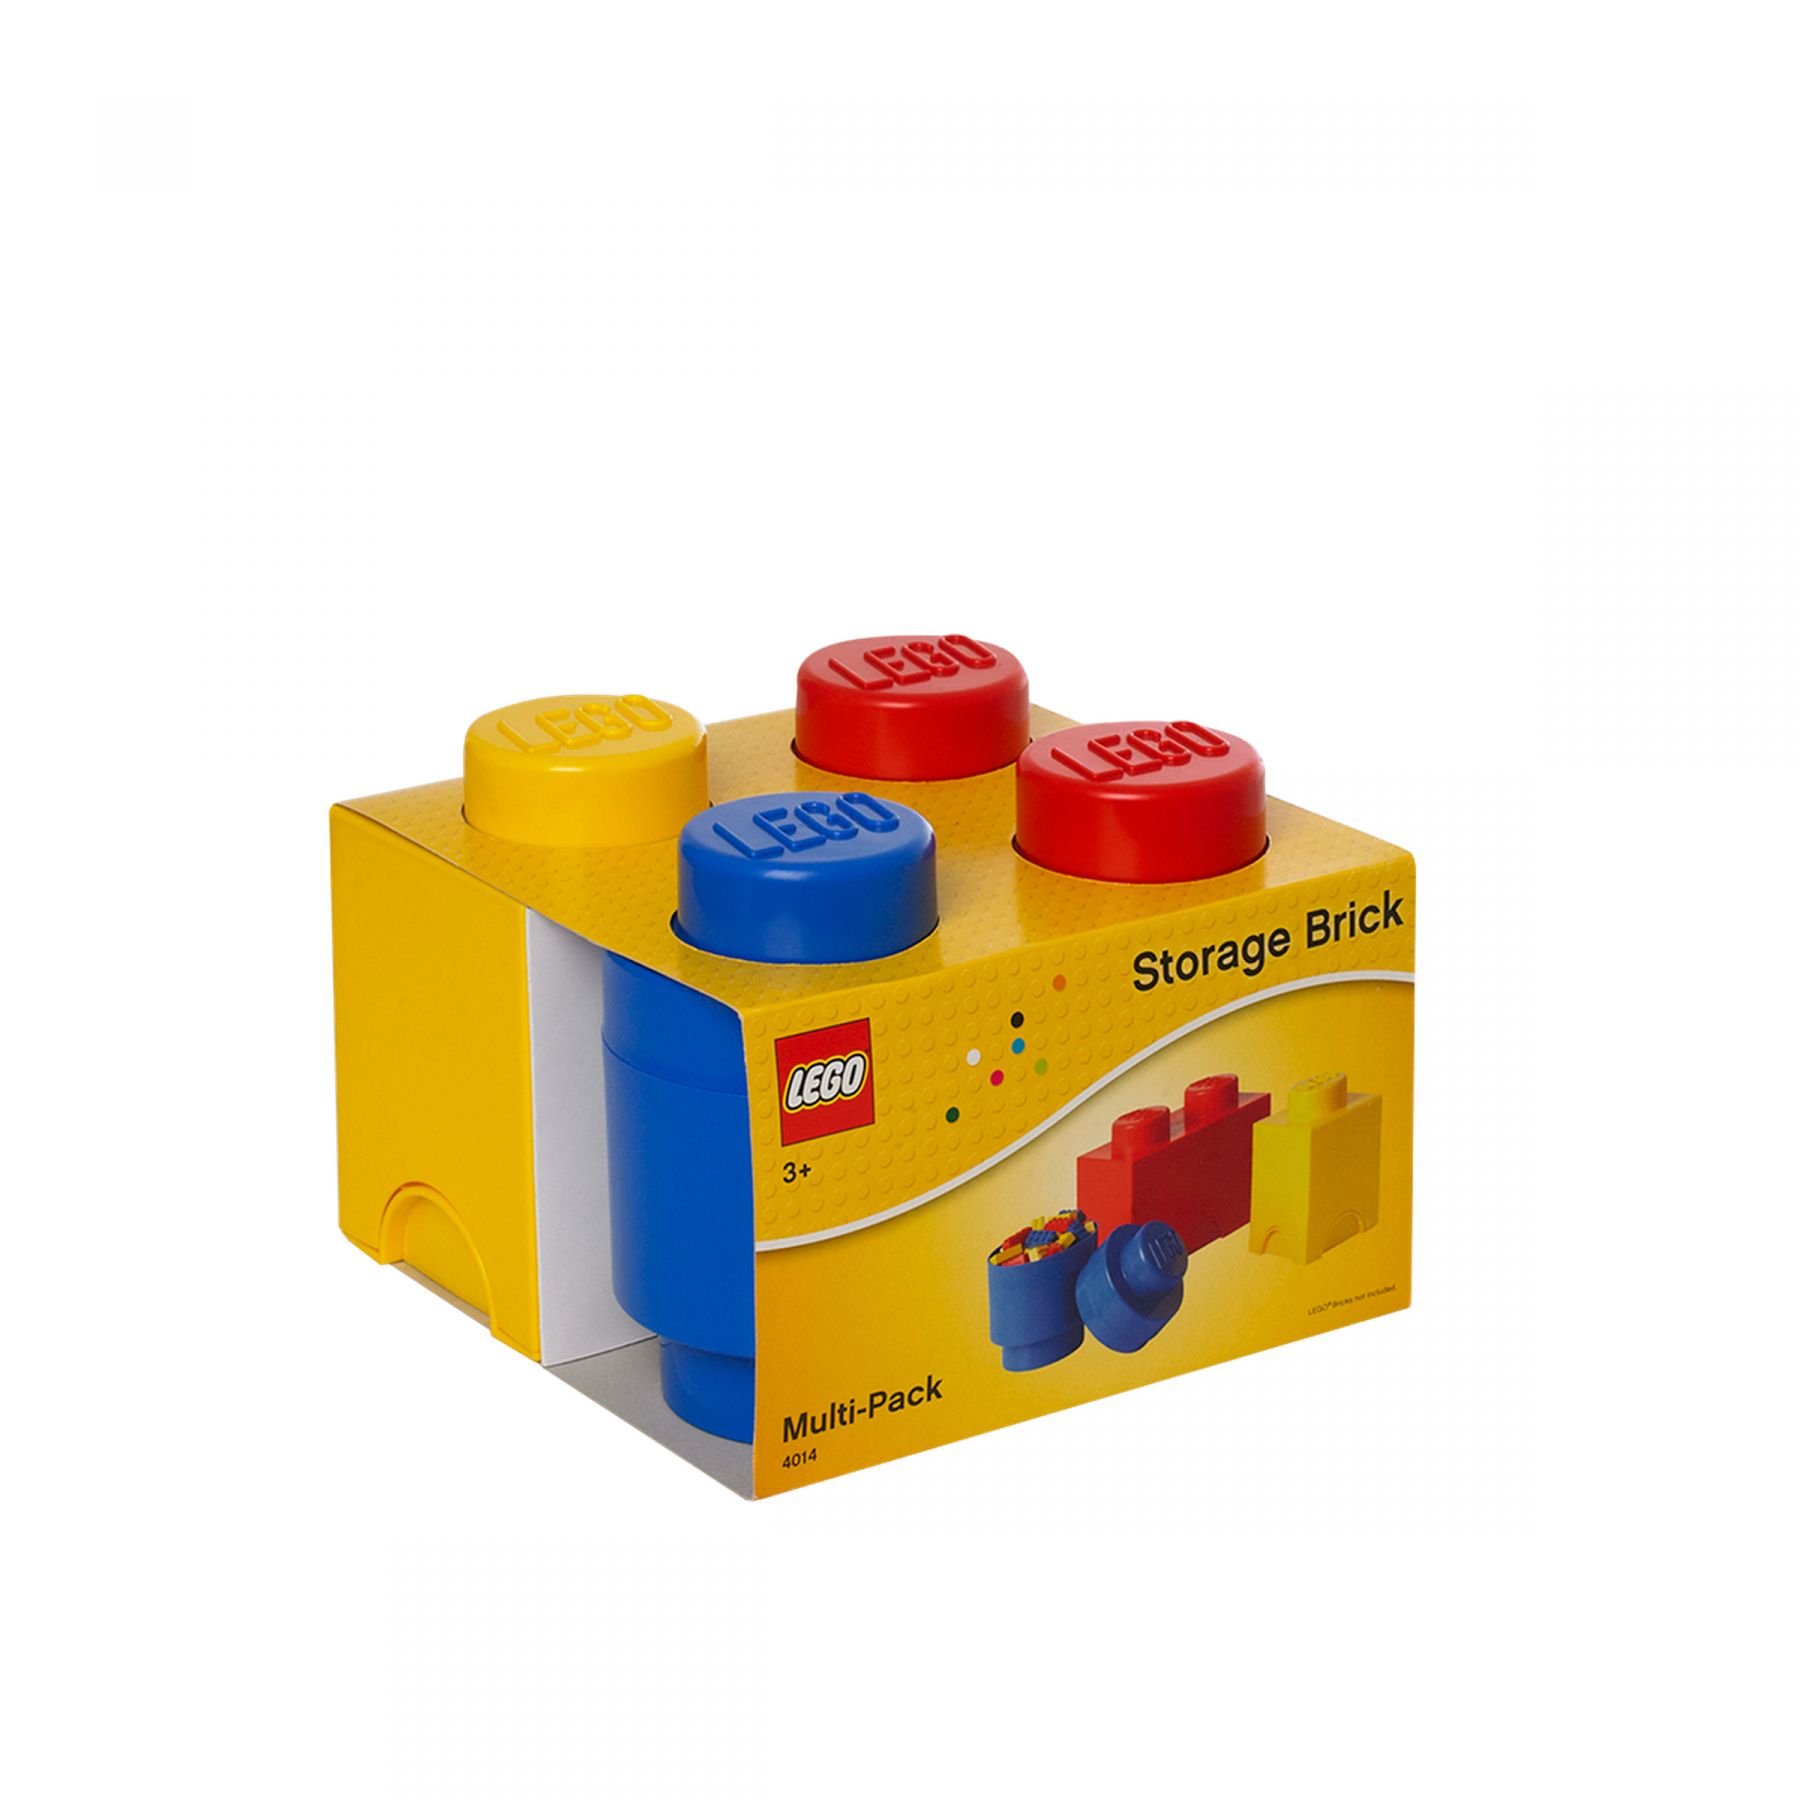 LEGO Gear 5004894 LEGO® DREIERPACKUNG LEGO_5004894_alt1.jpg